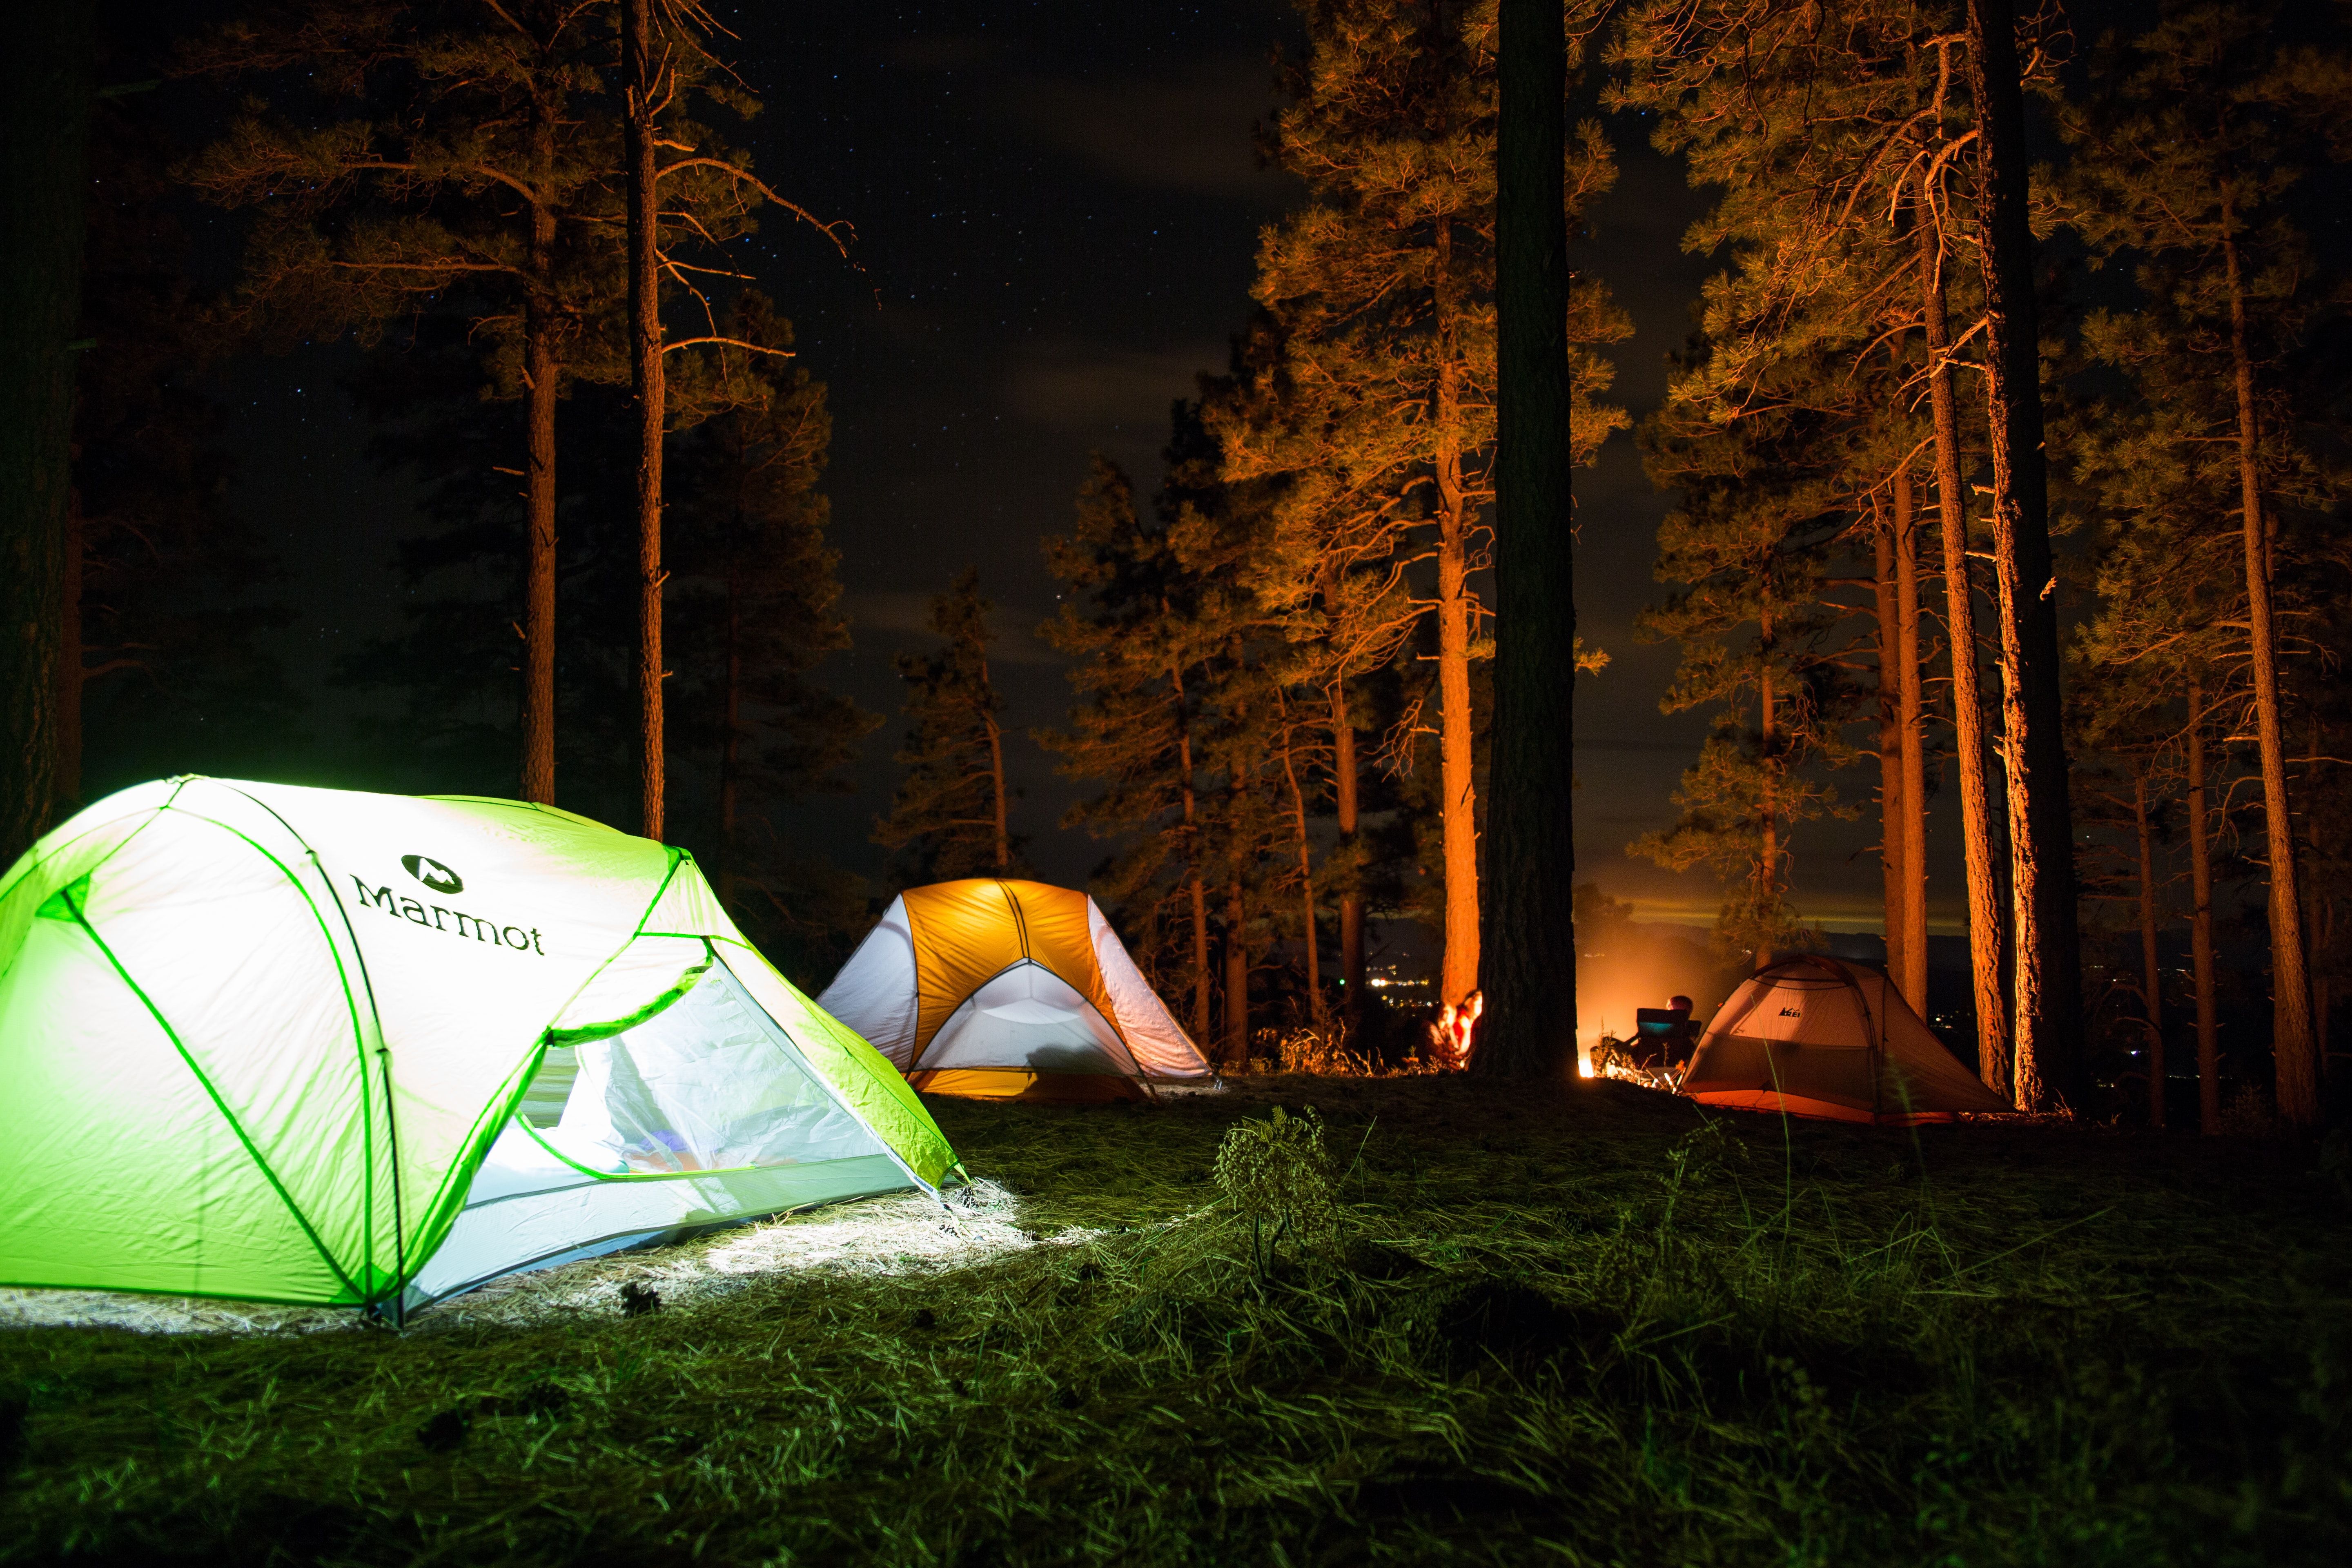 Camping at night with illumination.